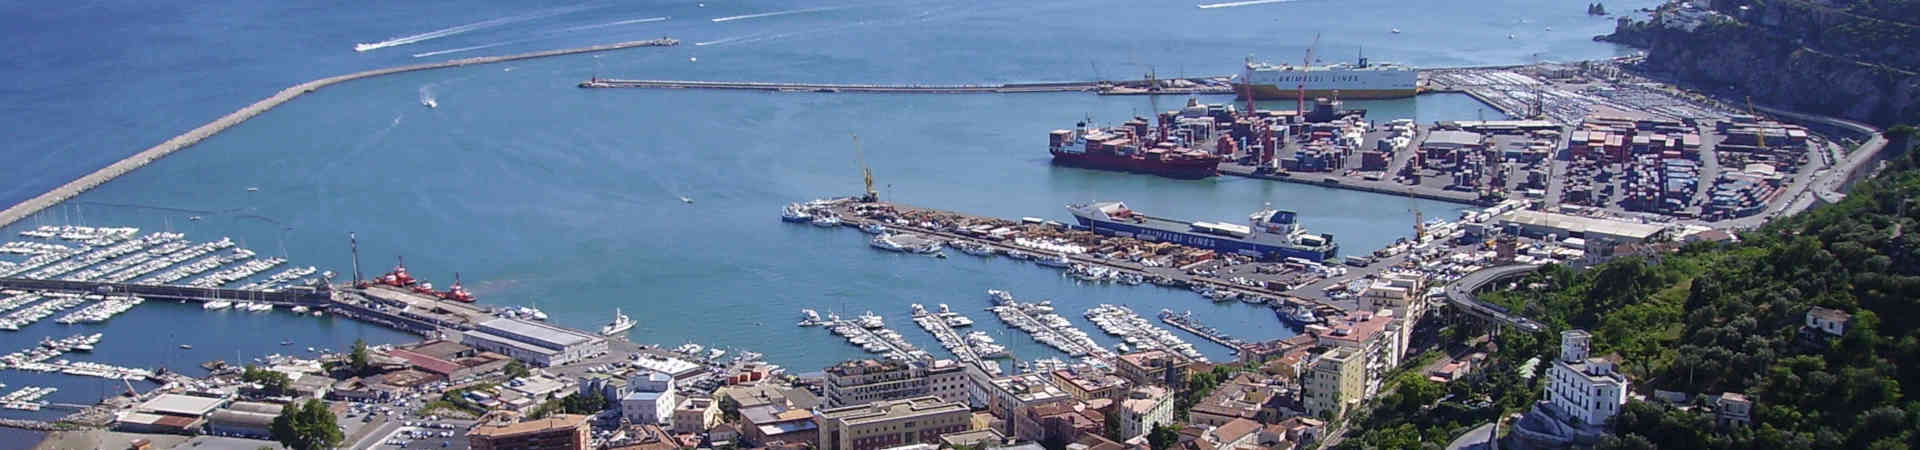 Immagine del porto di arrivo Salerno per la rotta traghetto Catania - Salerno